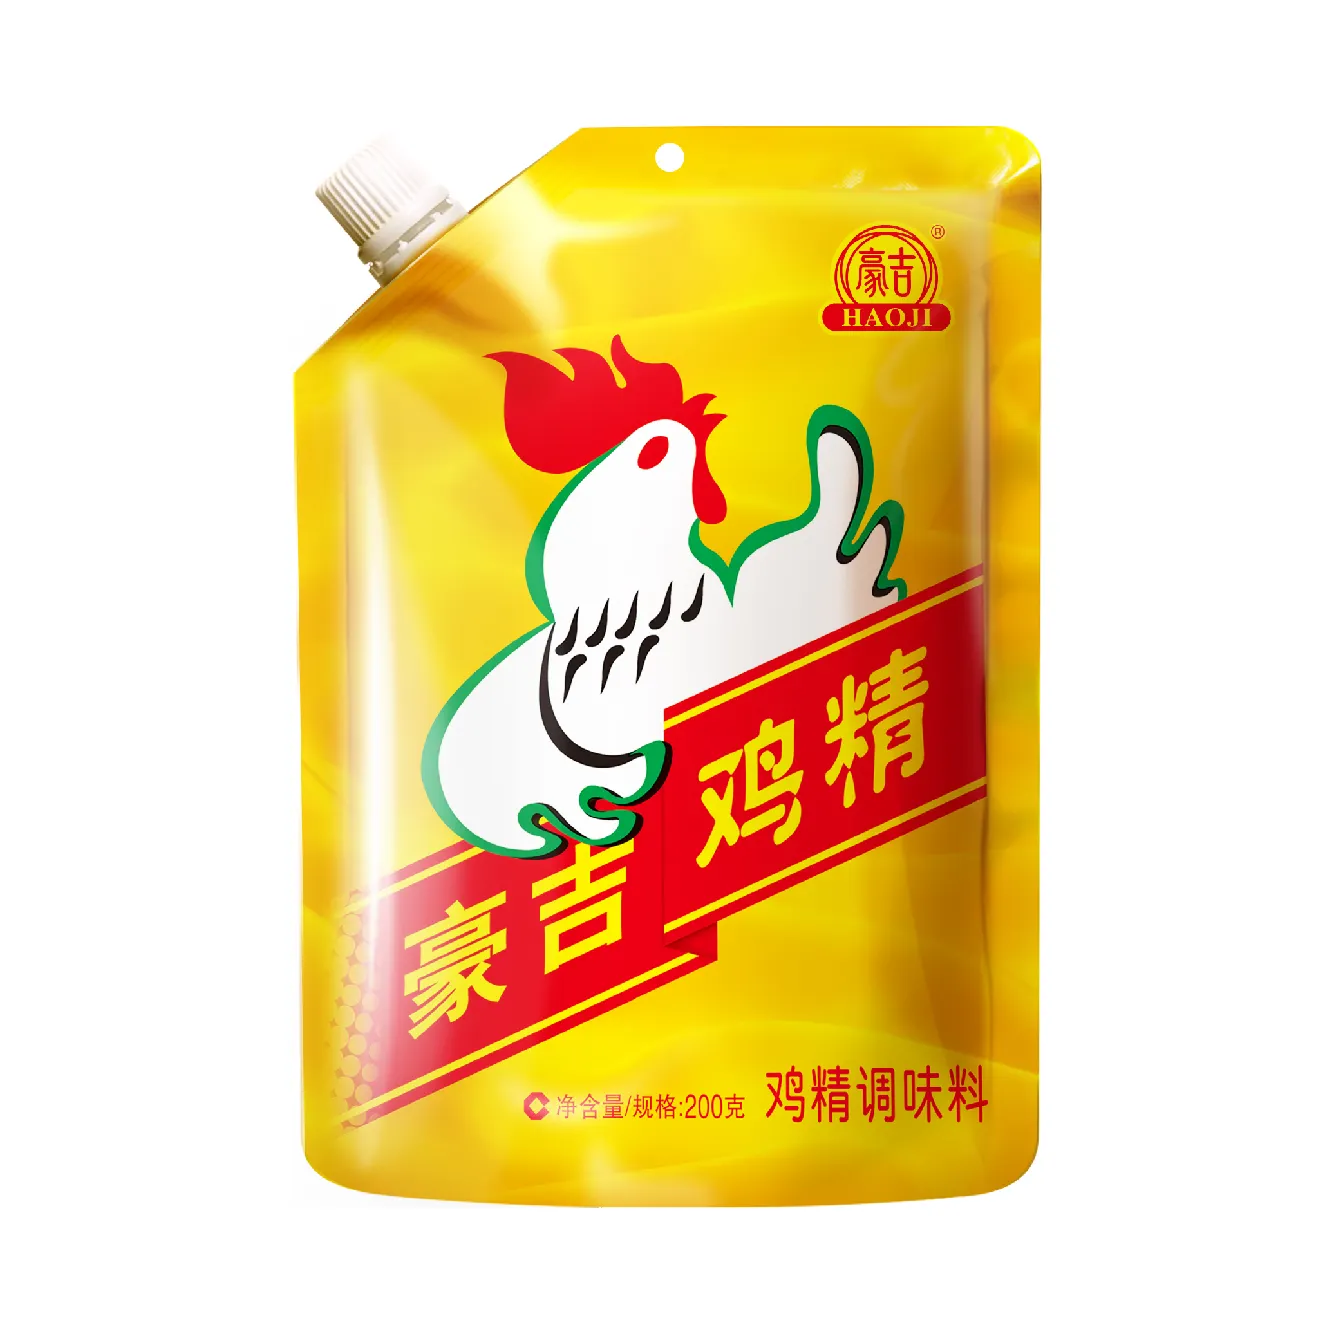 Hao Ji essenza di pollo buon gusto produttore di sichuan per il condimento alimentare granulato di pollo all'ingrosso